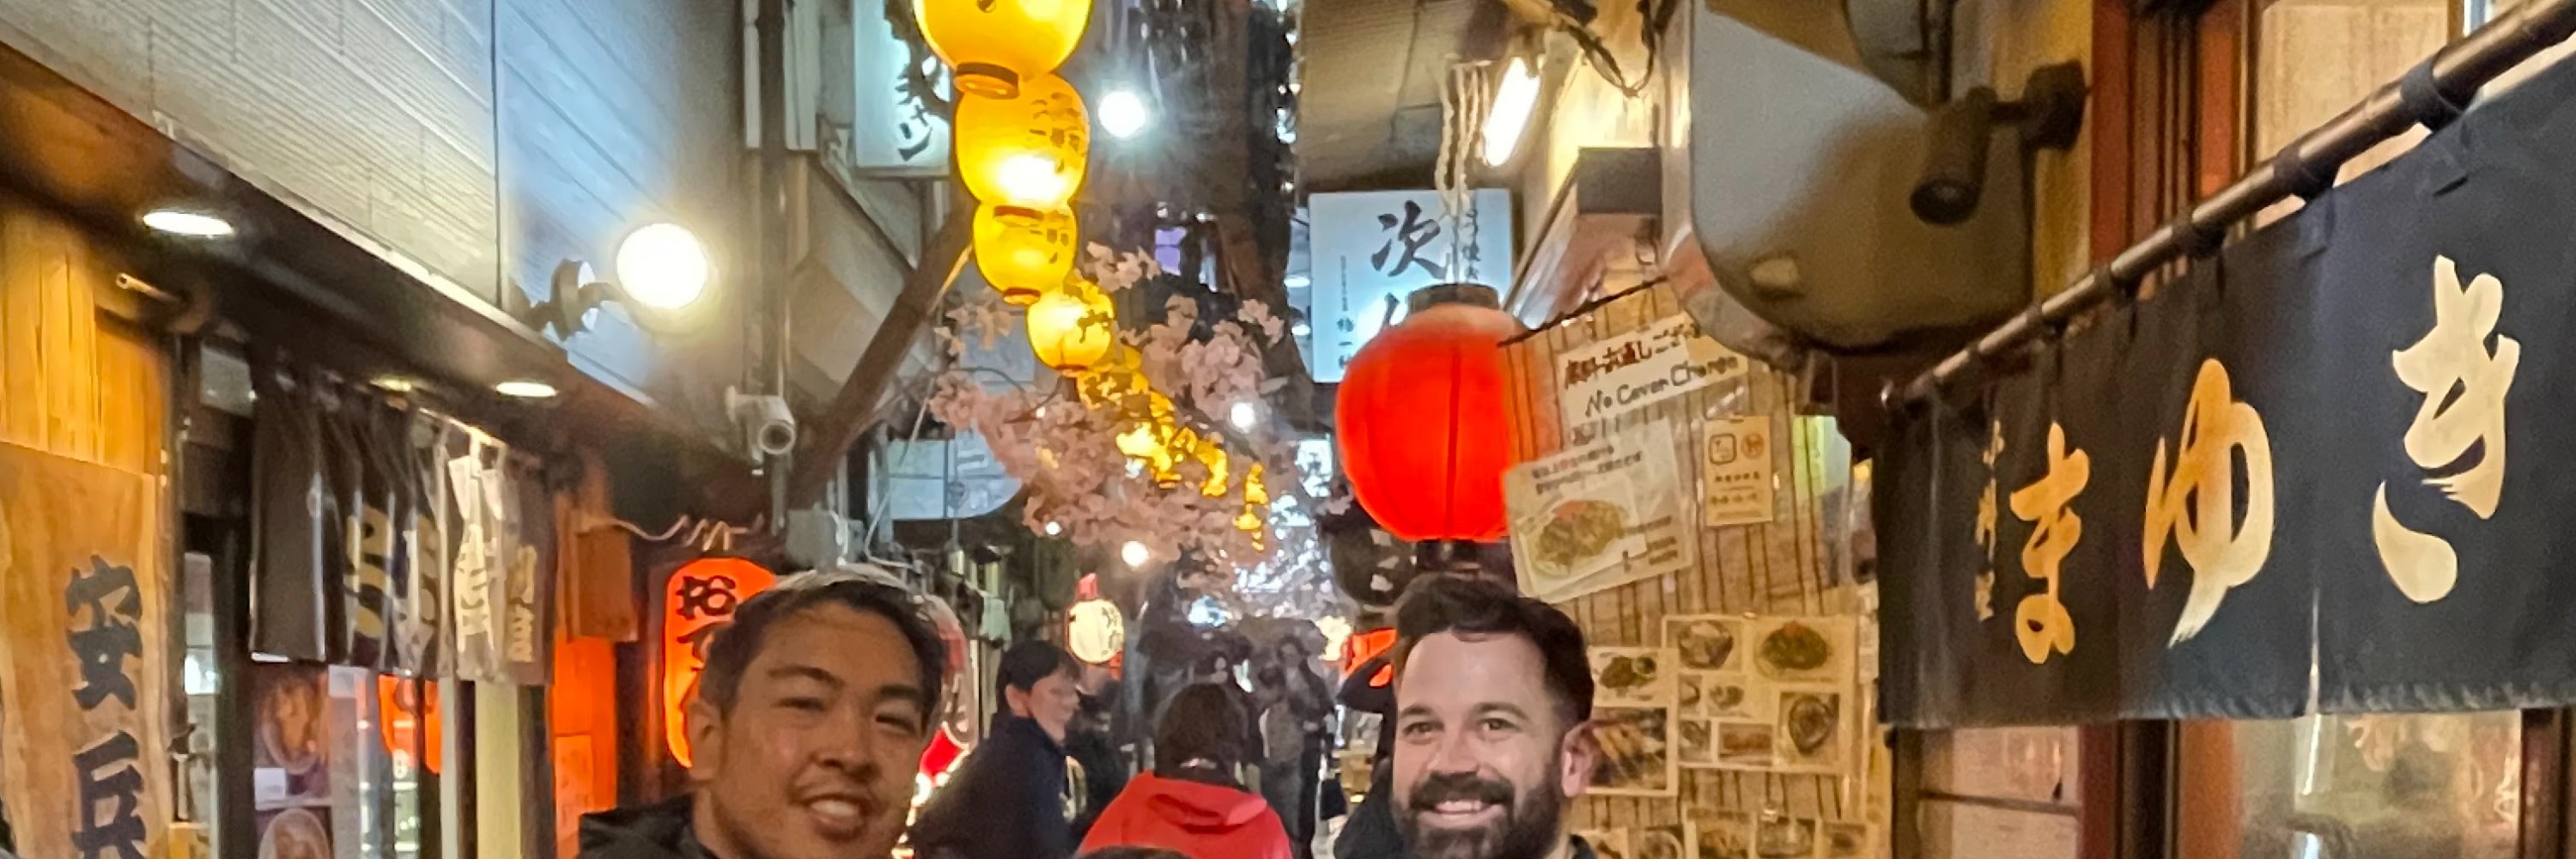 東京新宿在地秘境酒吧探索之旅